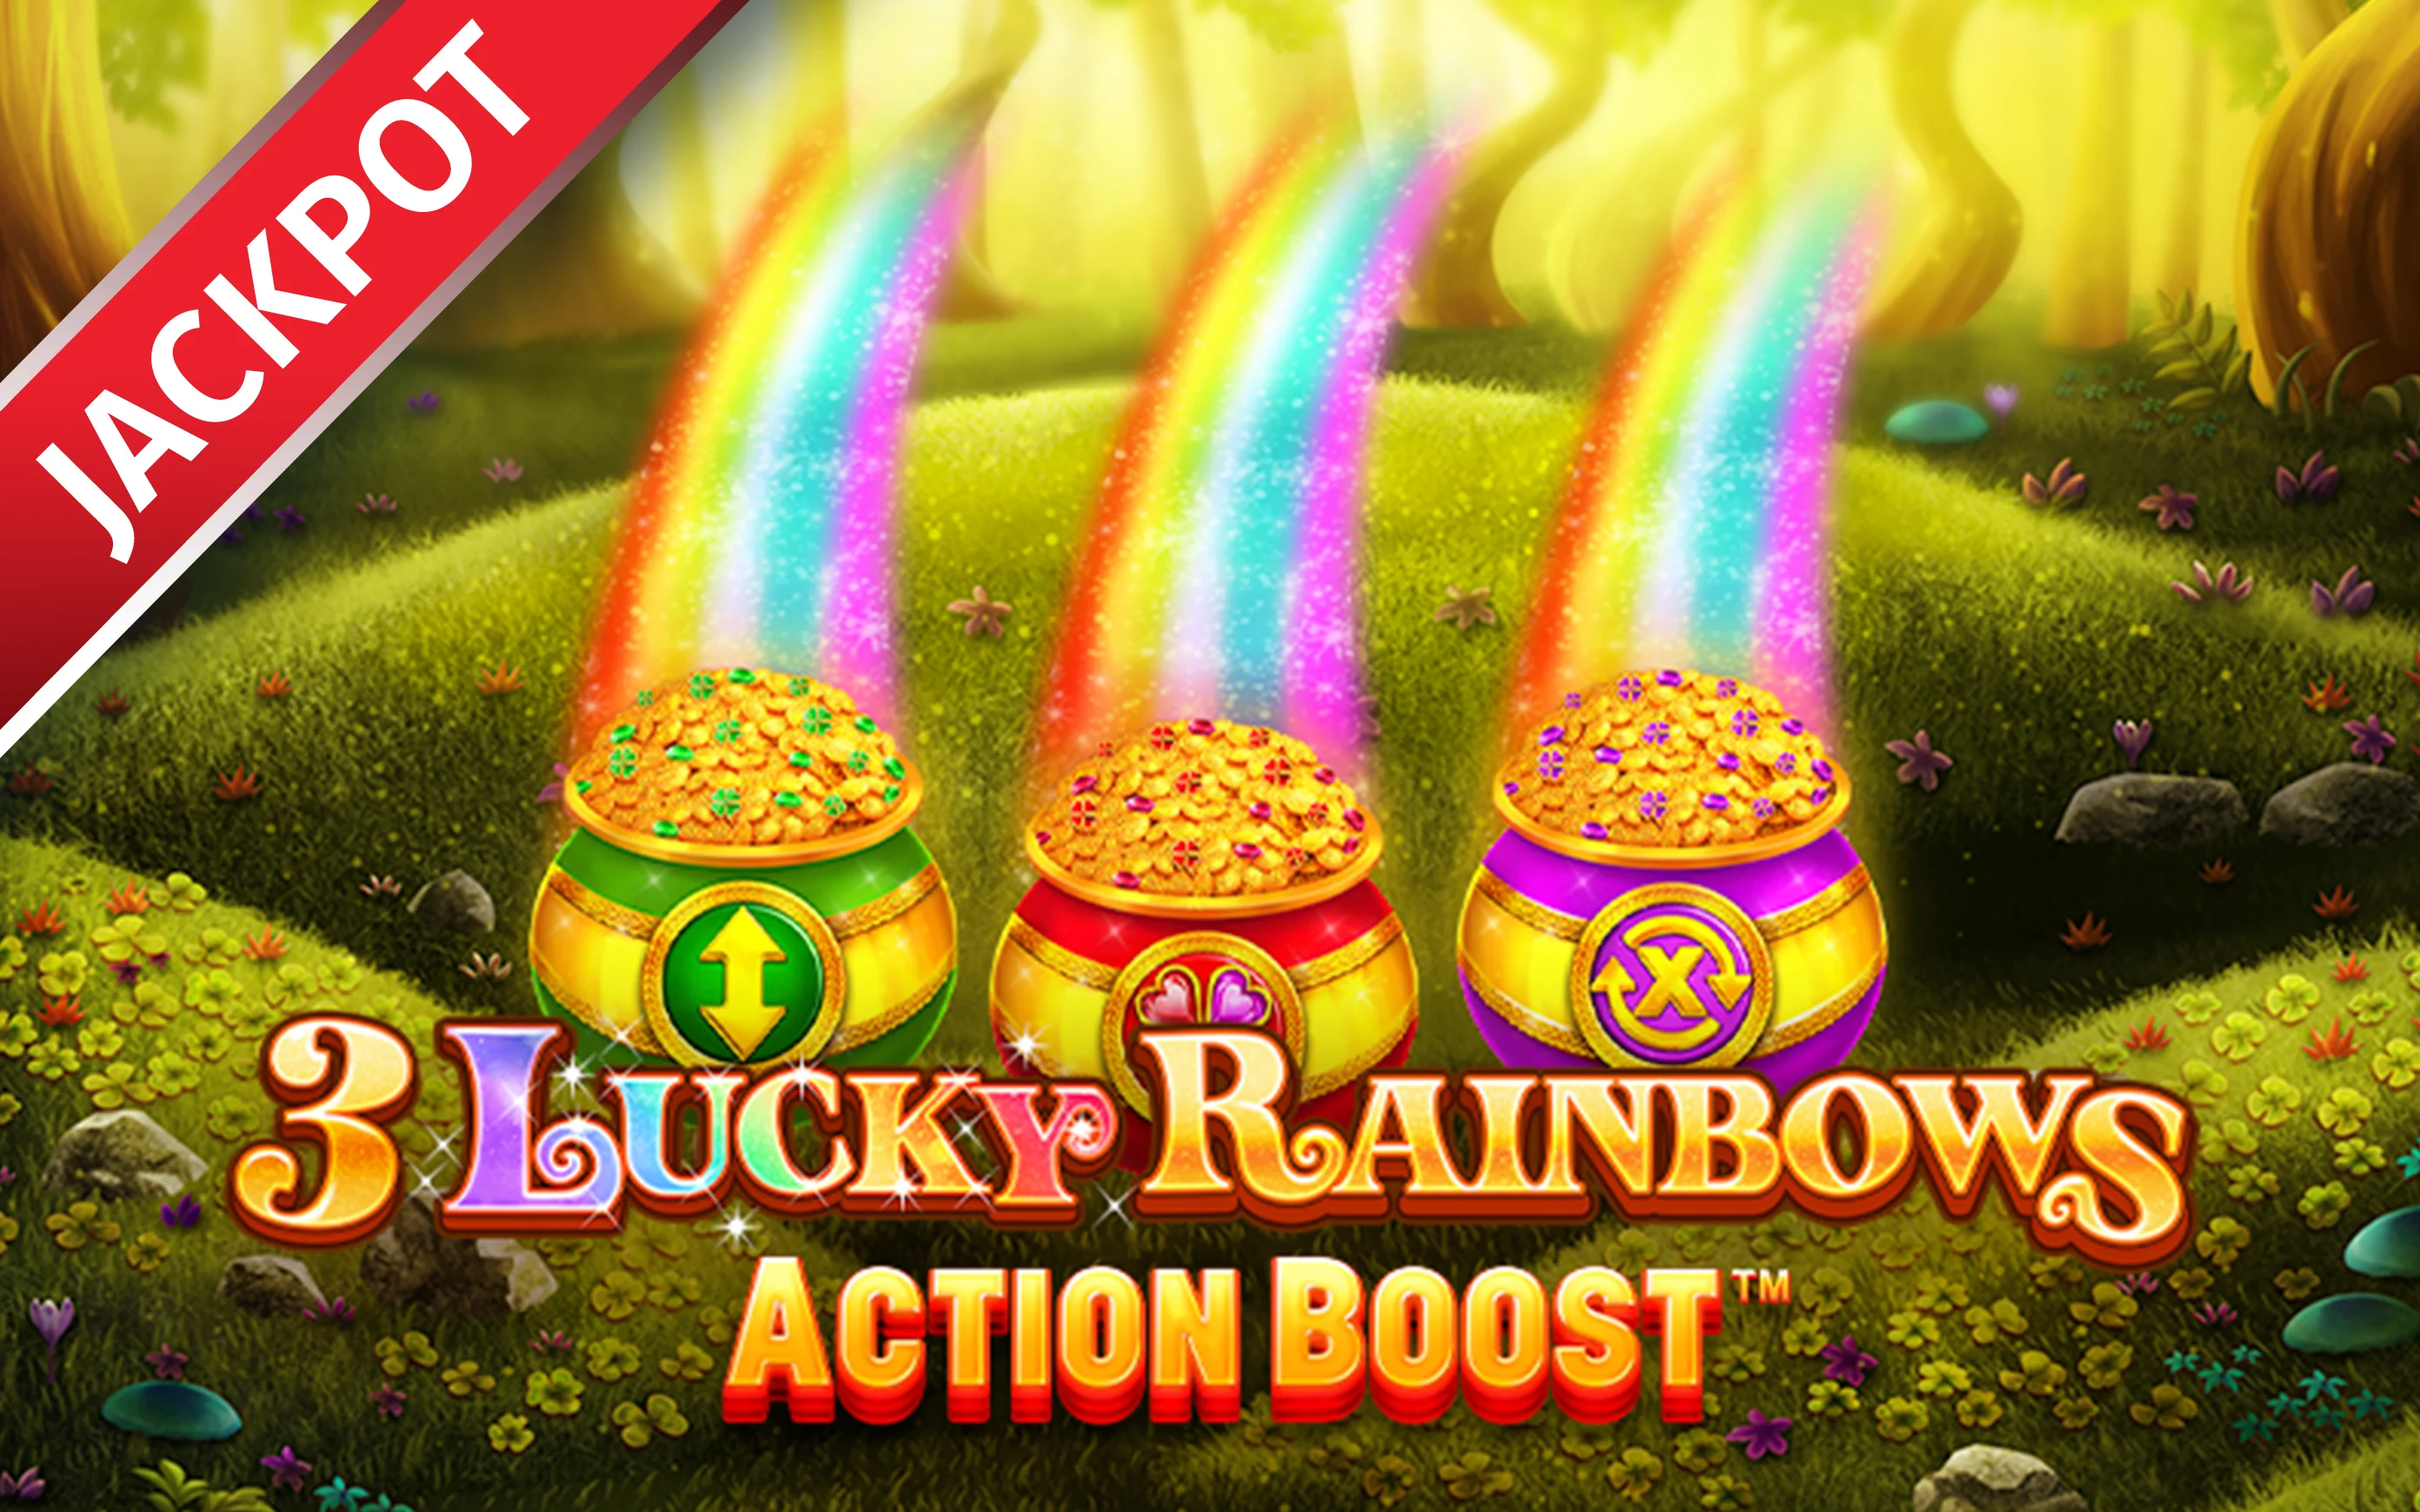 Luaj Action Boost ™ 3 Lucky Rainbows në kazino Starcasino.be në internet